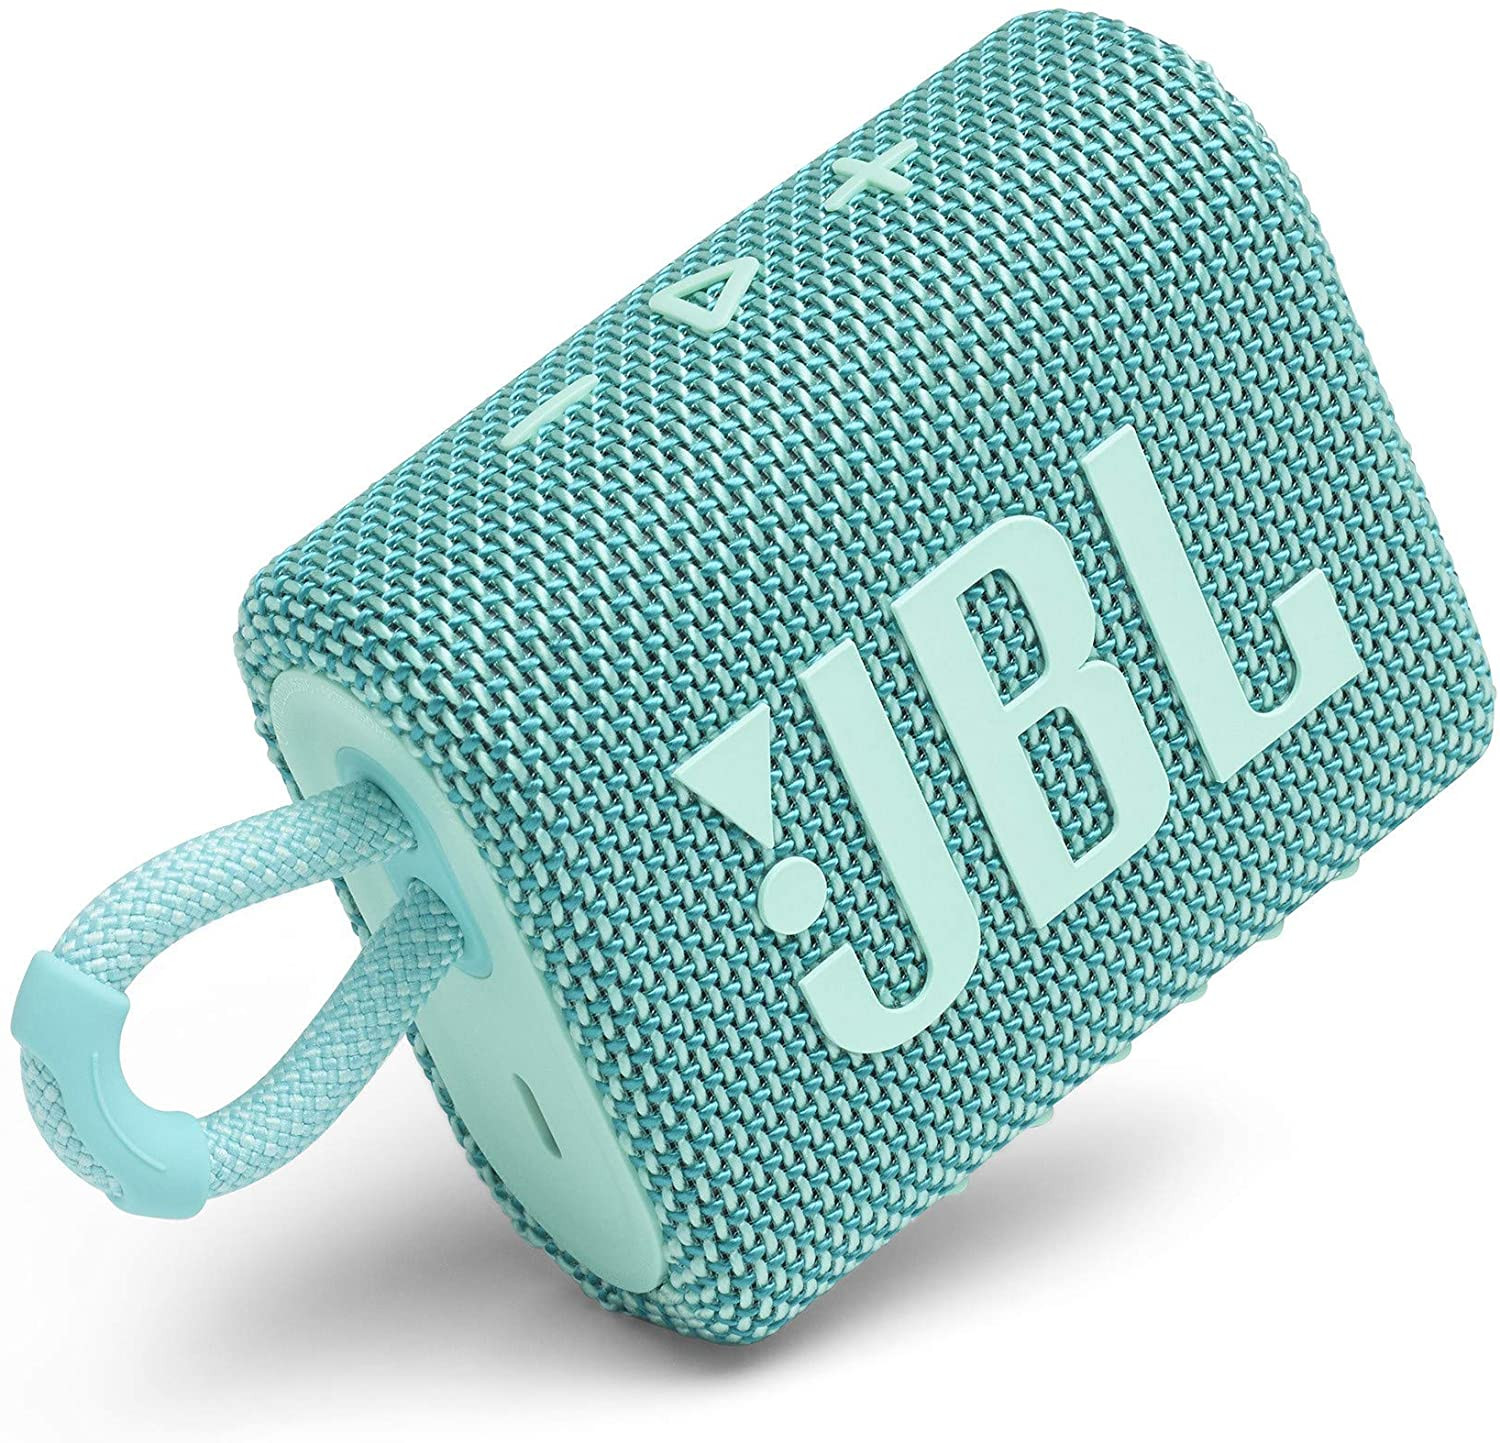 JBL GO 3 Bluetooth Portable Wireless Speaker IP67 waterproof